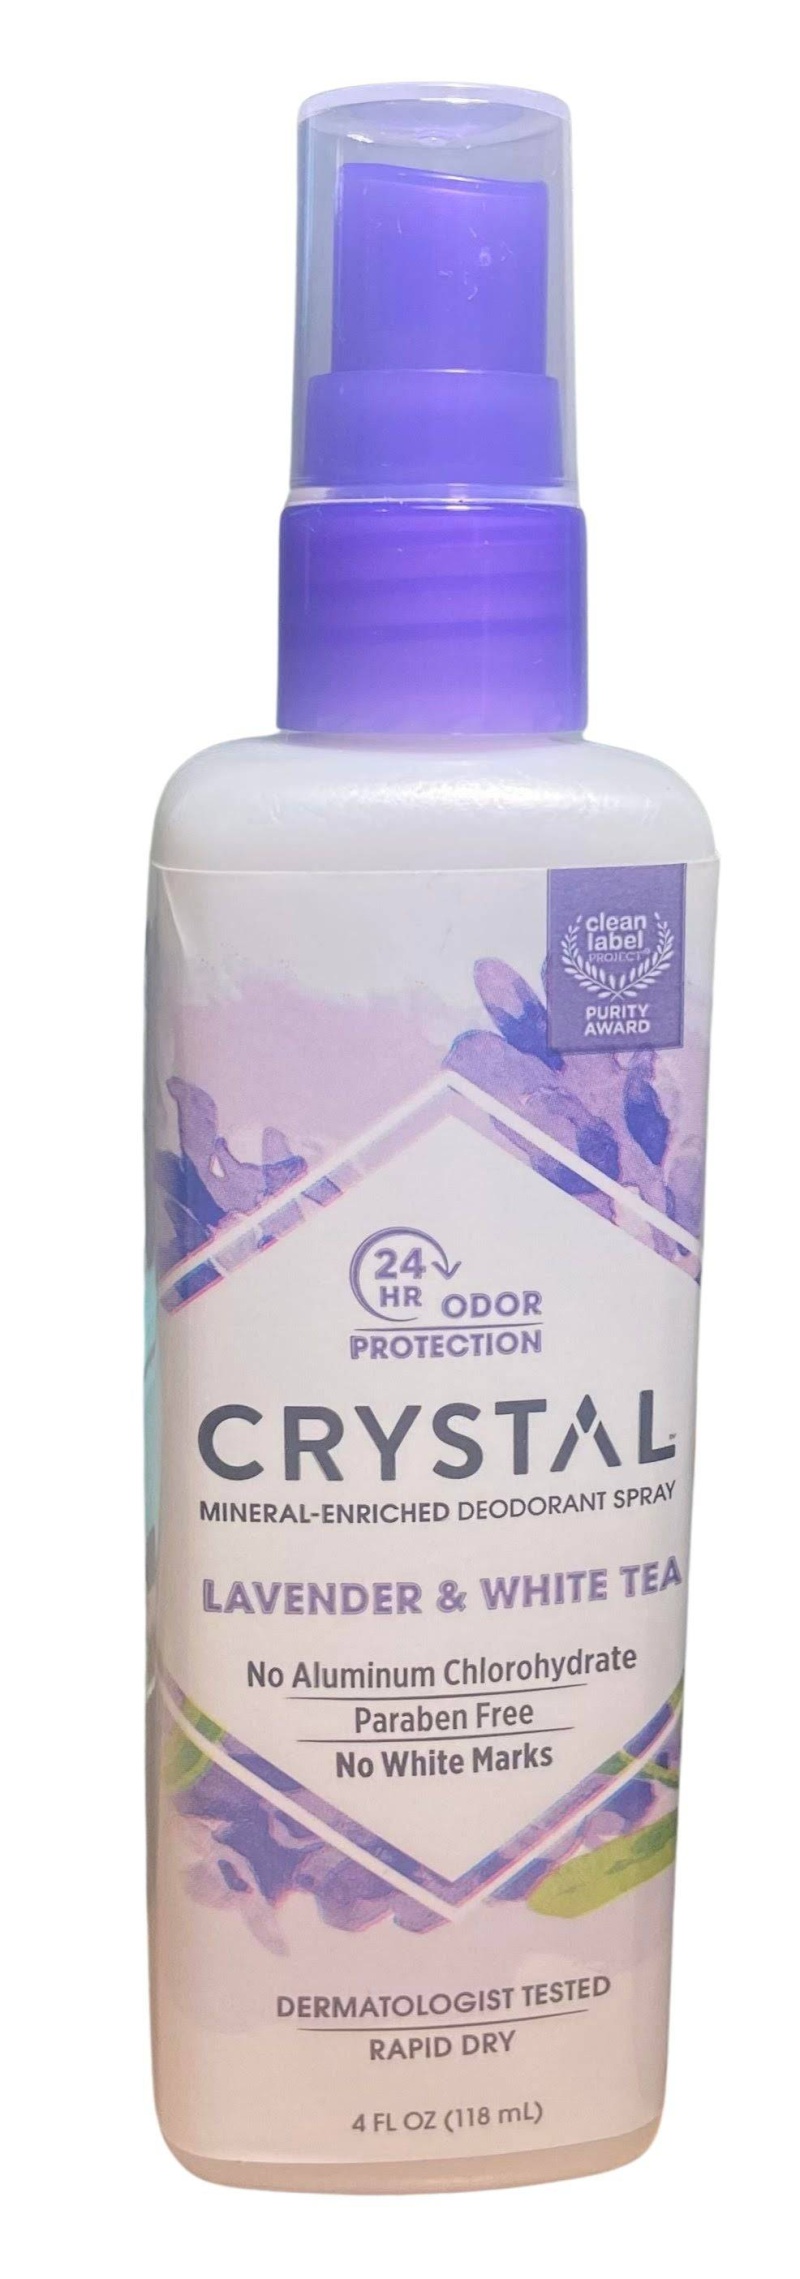 Crystal Deodorant, Spray, Lavender & White Tea - 4 Fl Oz